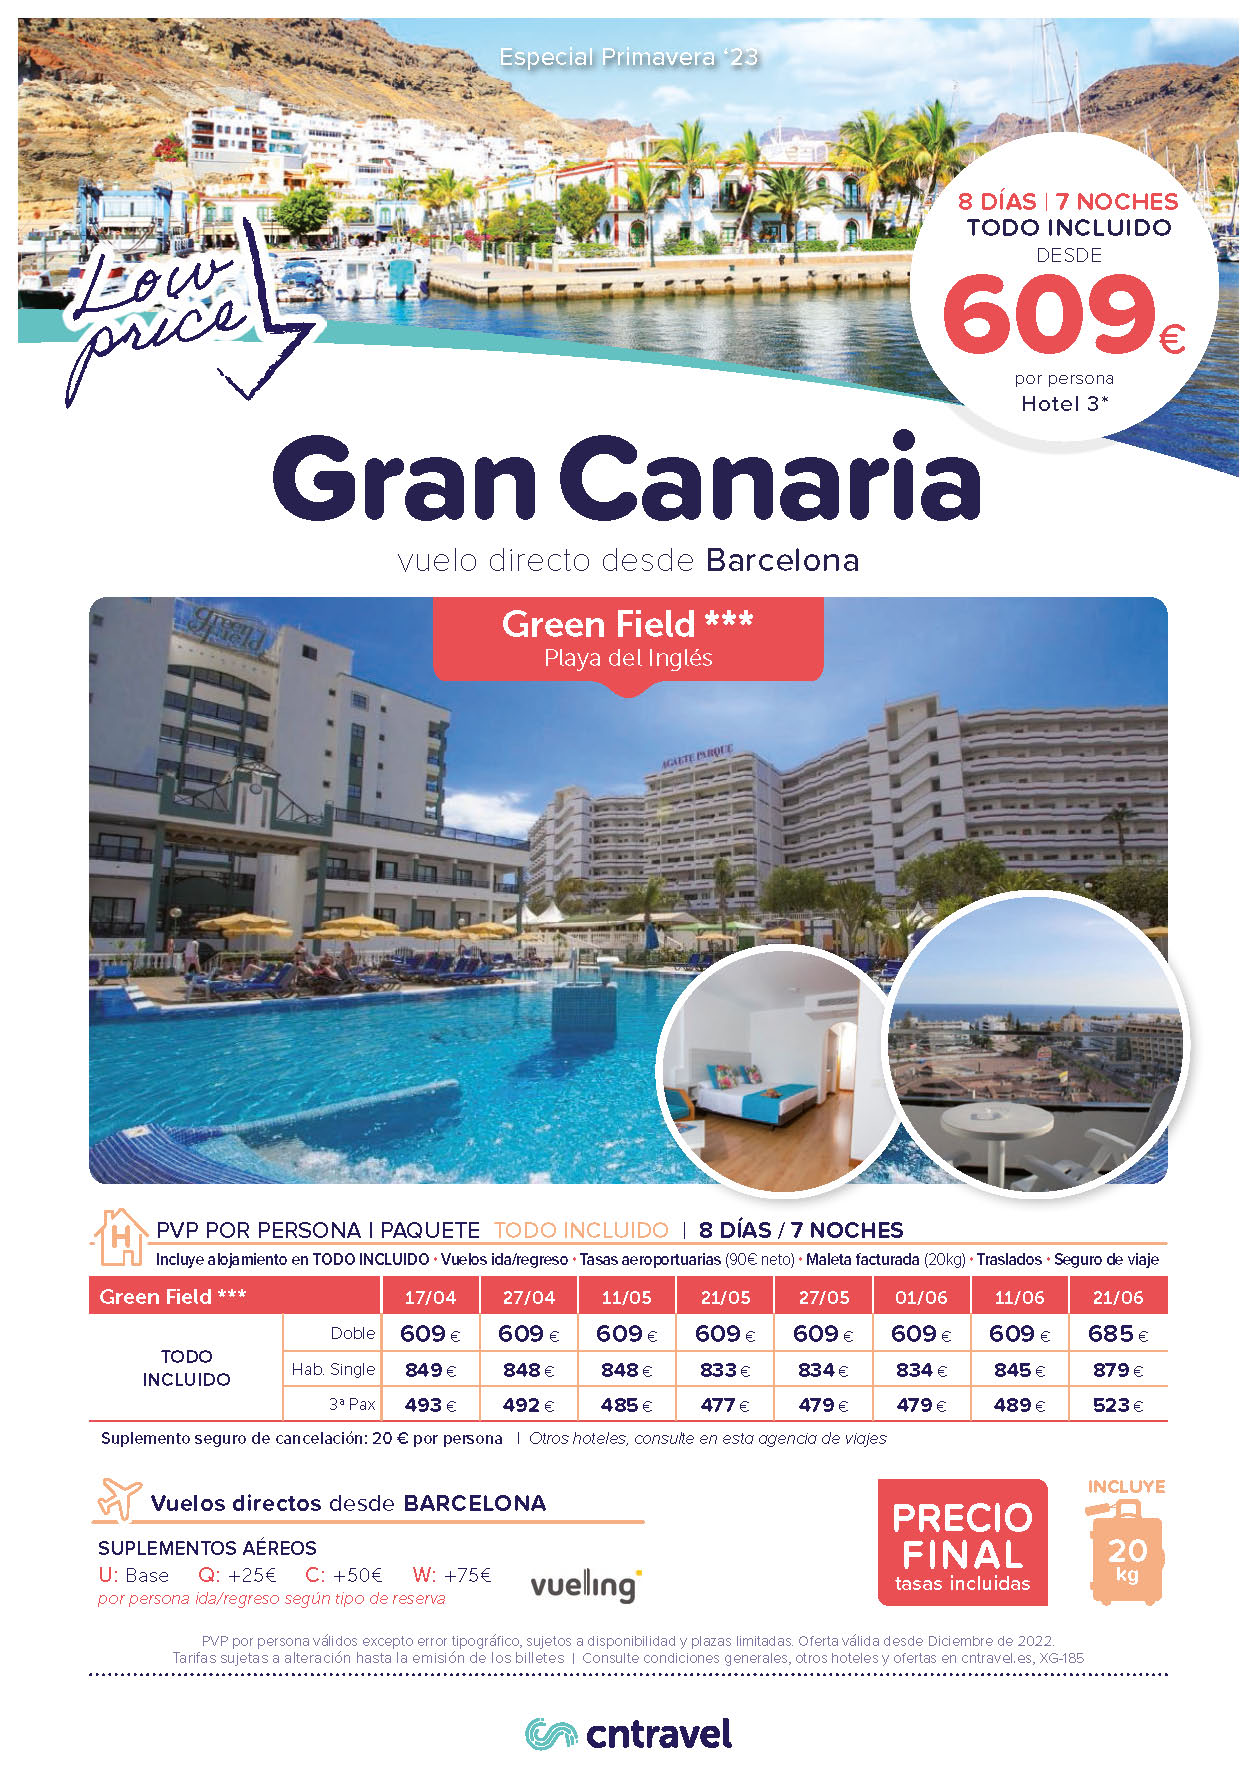 Ofertas CN Travel Primavera 2023 en Gran Canaria 8 dias Hotel 3 estrellas Todo Incluido vuelo directo desde Barcelona